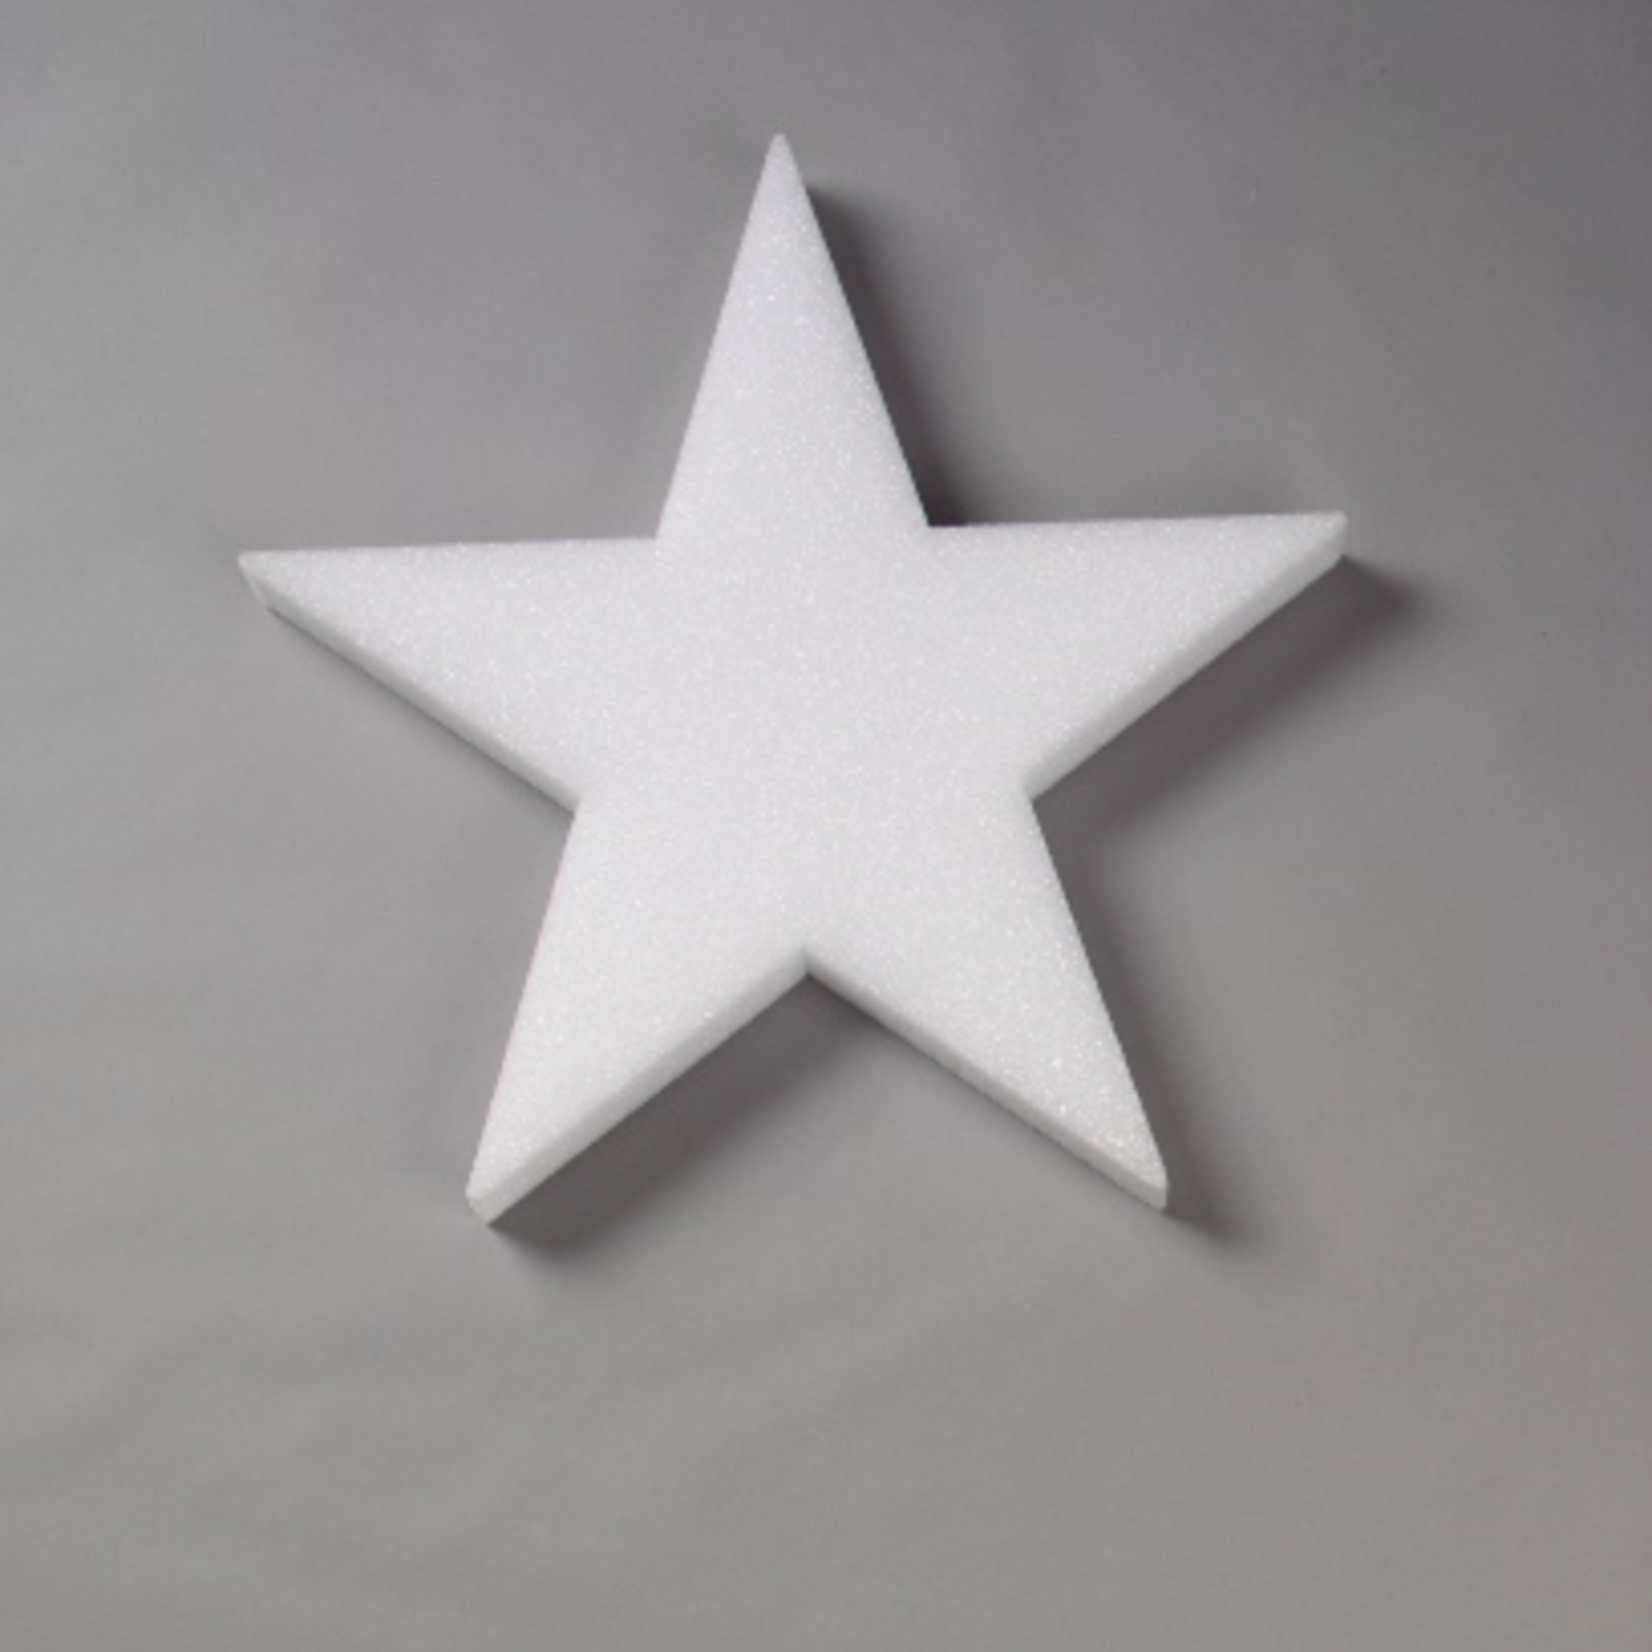 15x1-1/2"" White STYROFOAM Star